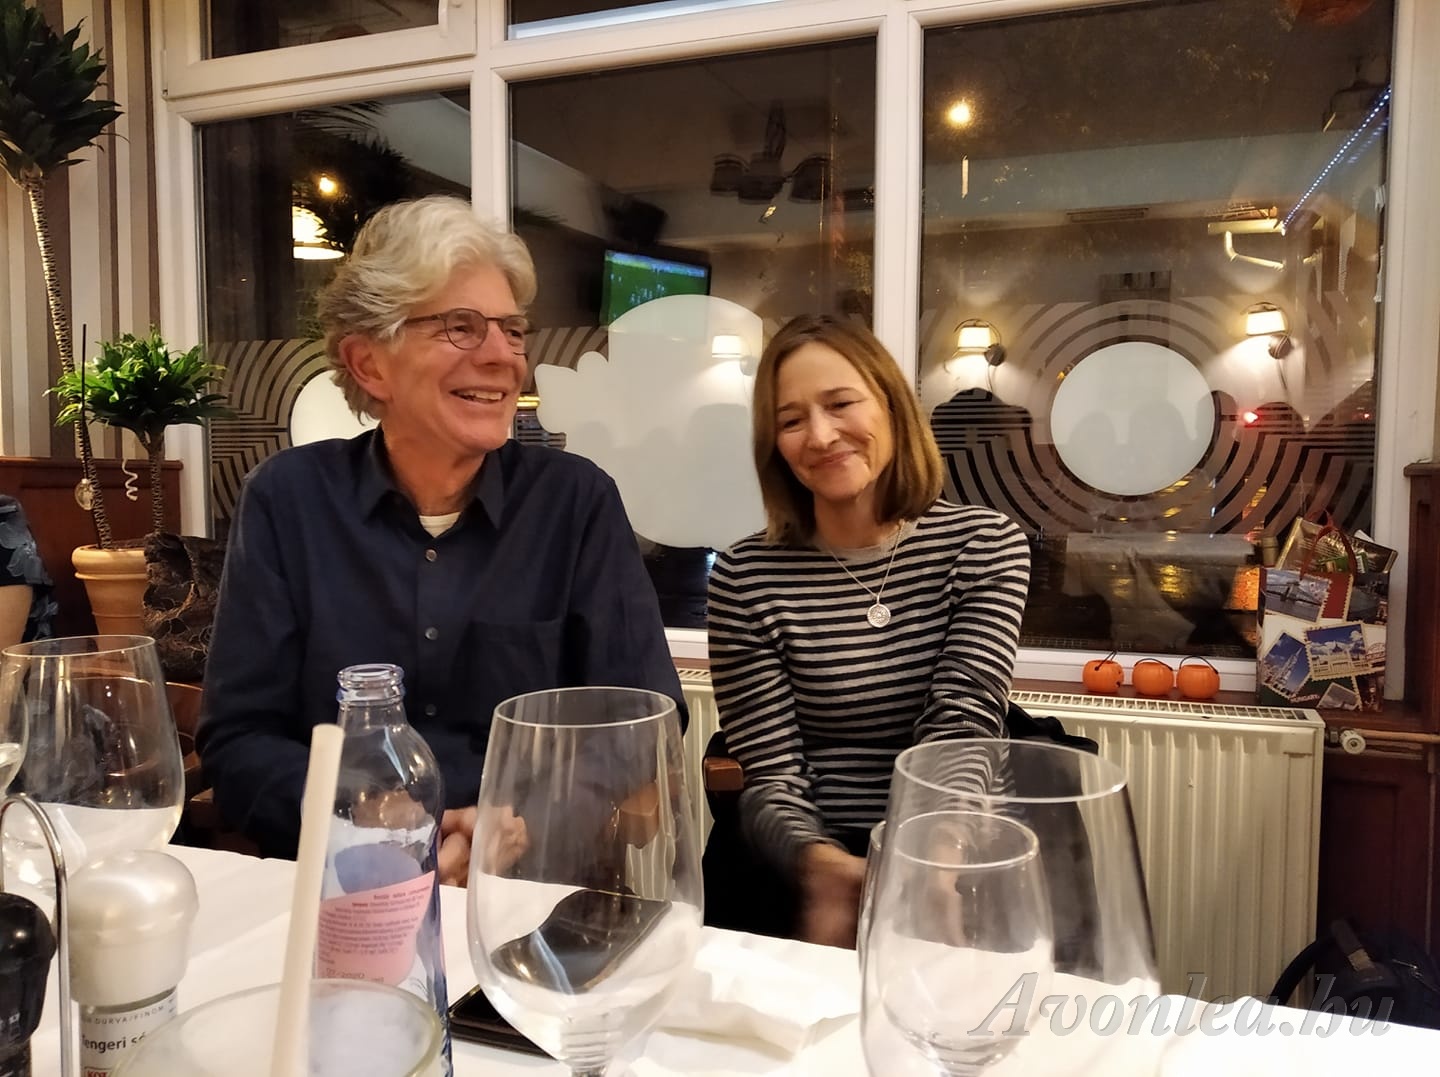 John és felesége Cherie a találkozó utáni vacsorán (Kozákné Claudia fotója)